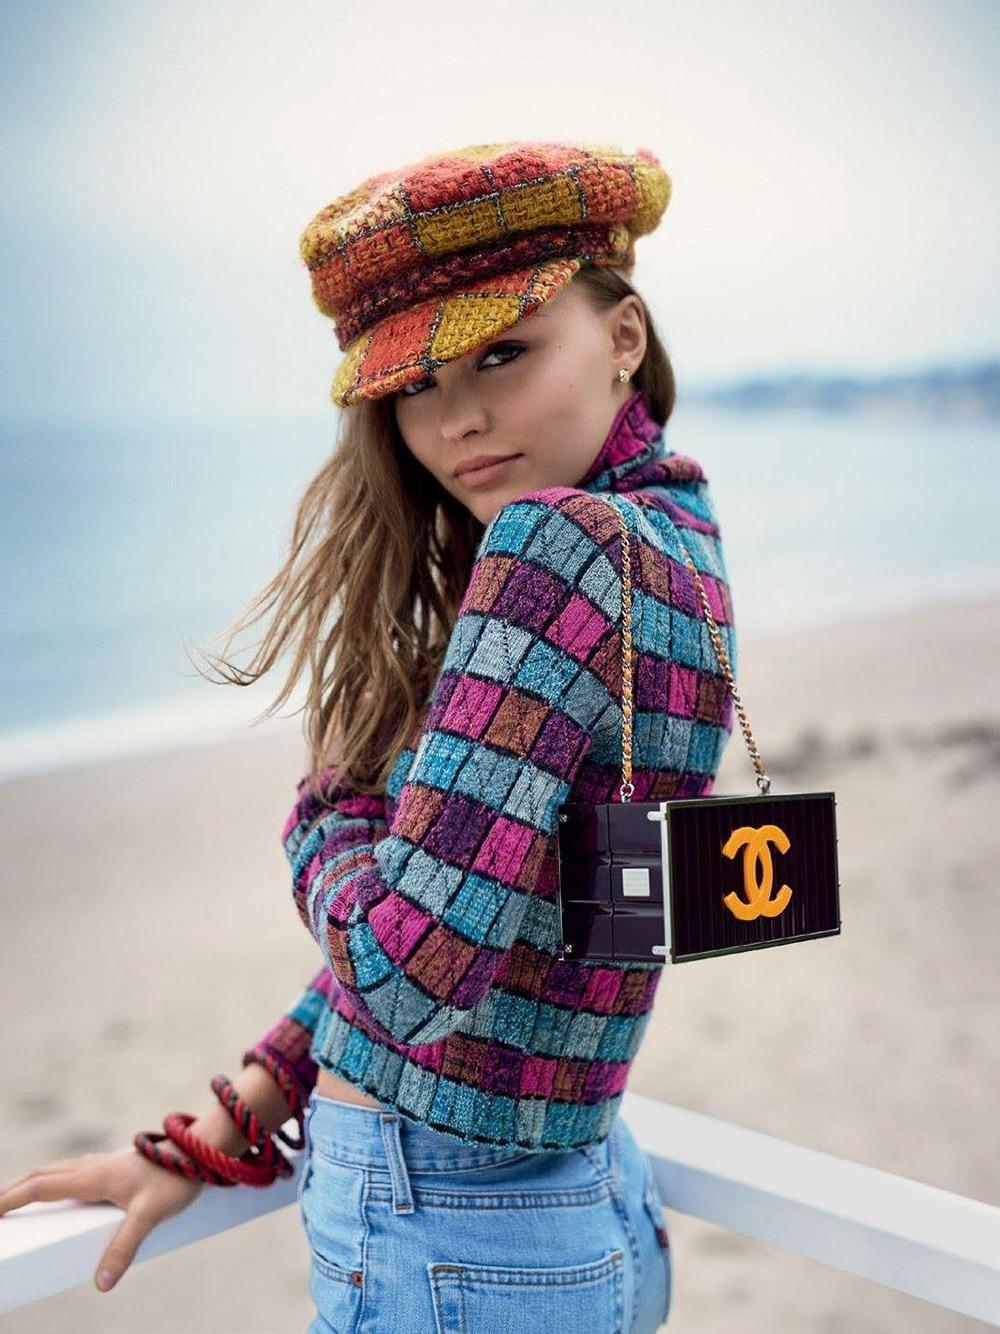 Wie bei Lily Rose Depp auf dem VOGUE-Cover zu sehen!
Neues berühmtes Chanel Angorastrickkleid von Runway of Paris / HAMBURG Collection'S, 2018 Metiers d'Art
Wie bei vielen Promis gesehen!
- CC-Logo-Tasten
- Farben und Details wie ein